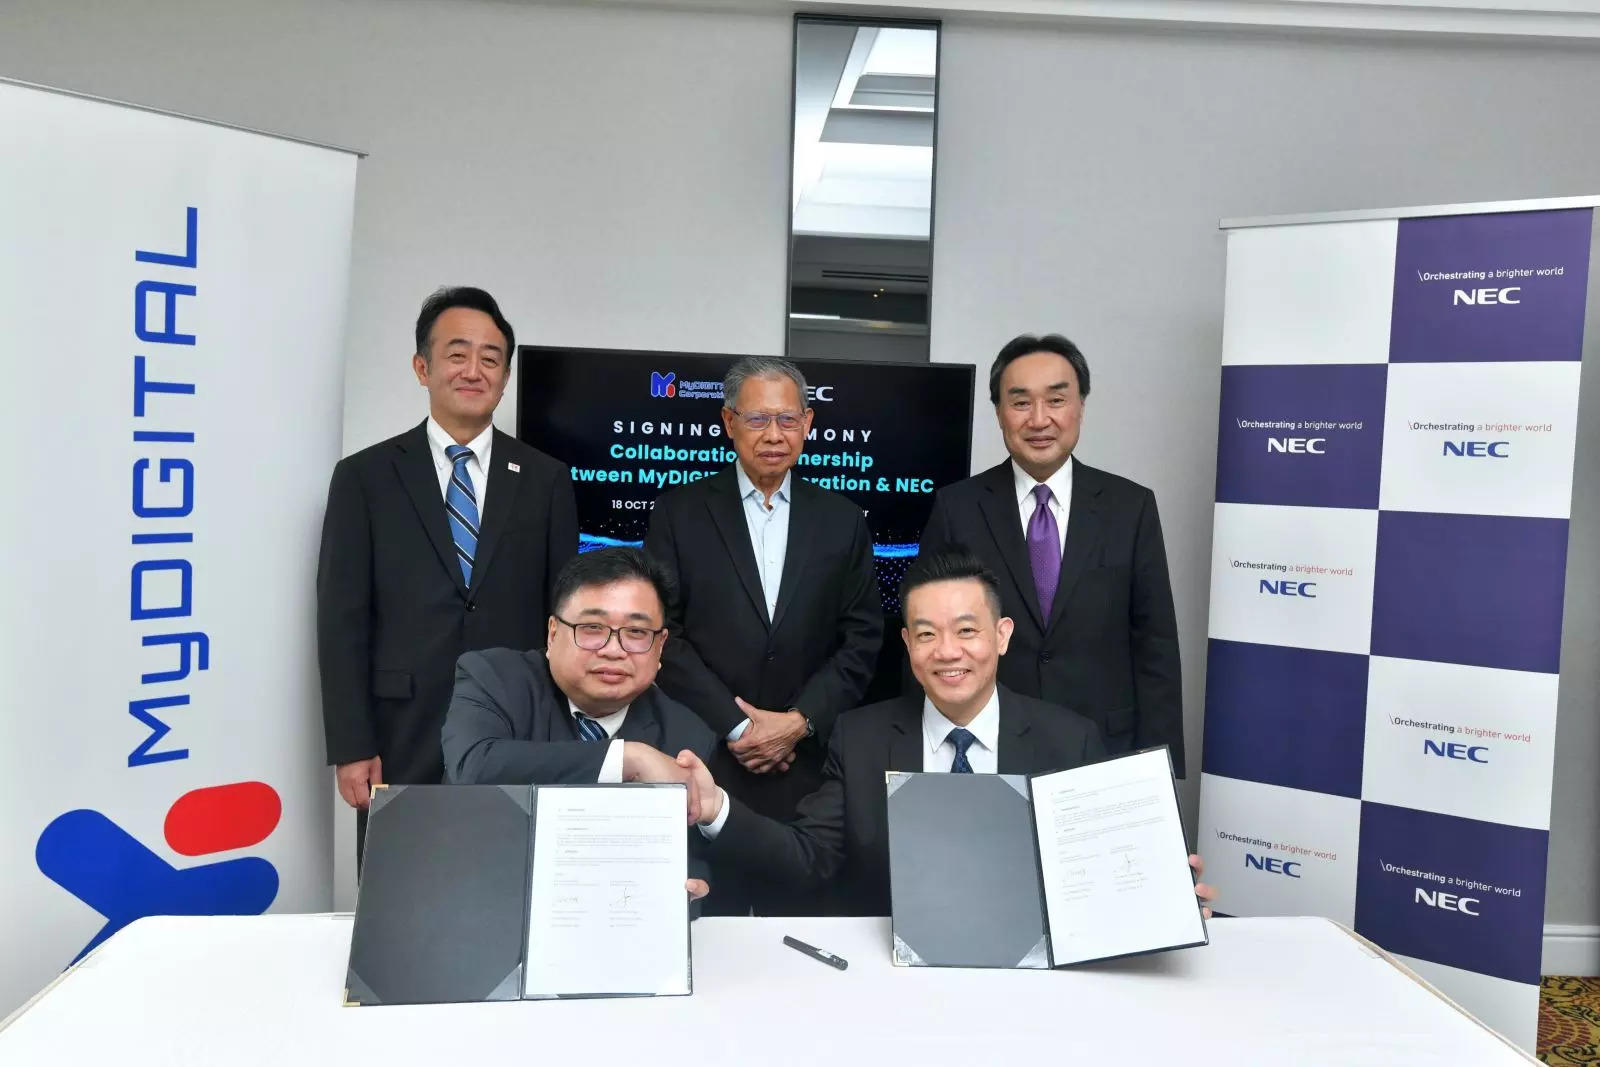   （从左到右）：MyDIGITAL Corporation 首席执行官 Fabian Bigar 和 NEC Malaysia 医学博士 Chong Kai Wooi 见证；  （从左至右）：日本驻马来西亚大使高桥胜彦、首相署（经济）部长拿督斯里穆斯塔帕穆罕默德和 NEC 公司全球业务部总裁熊谷明彦先生。